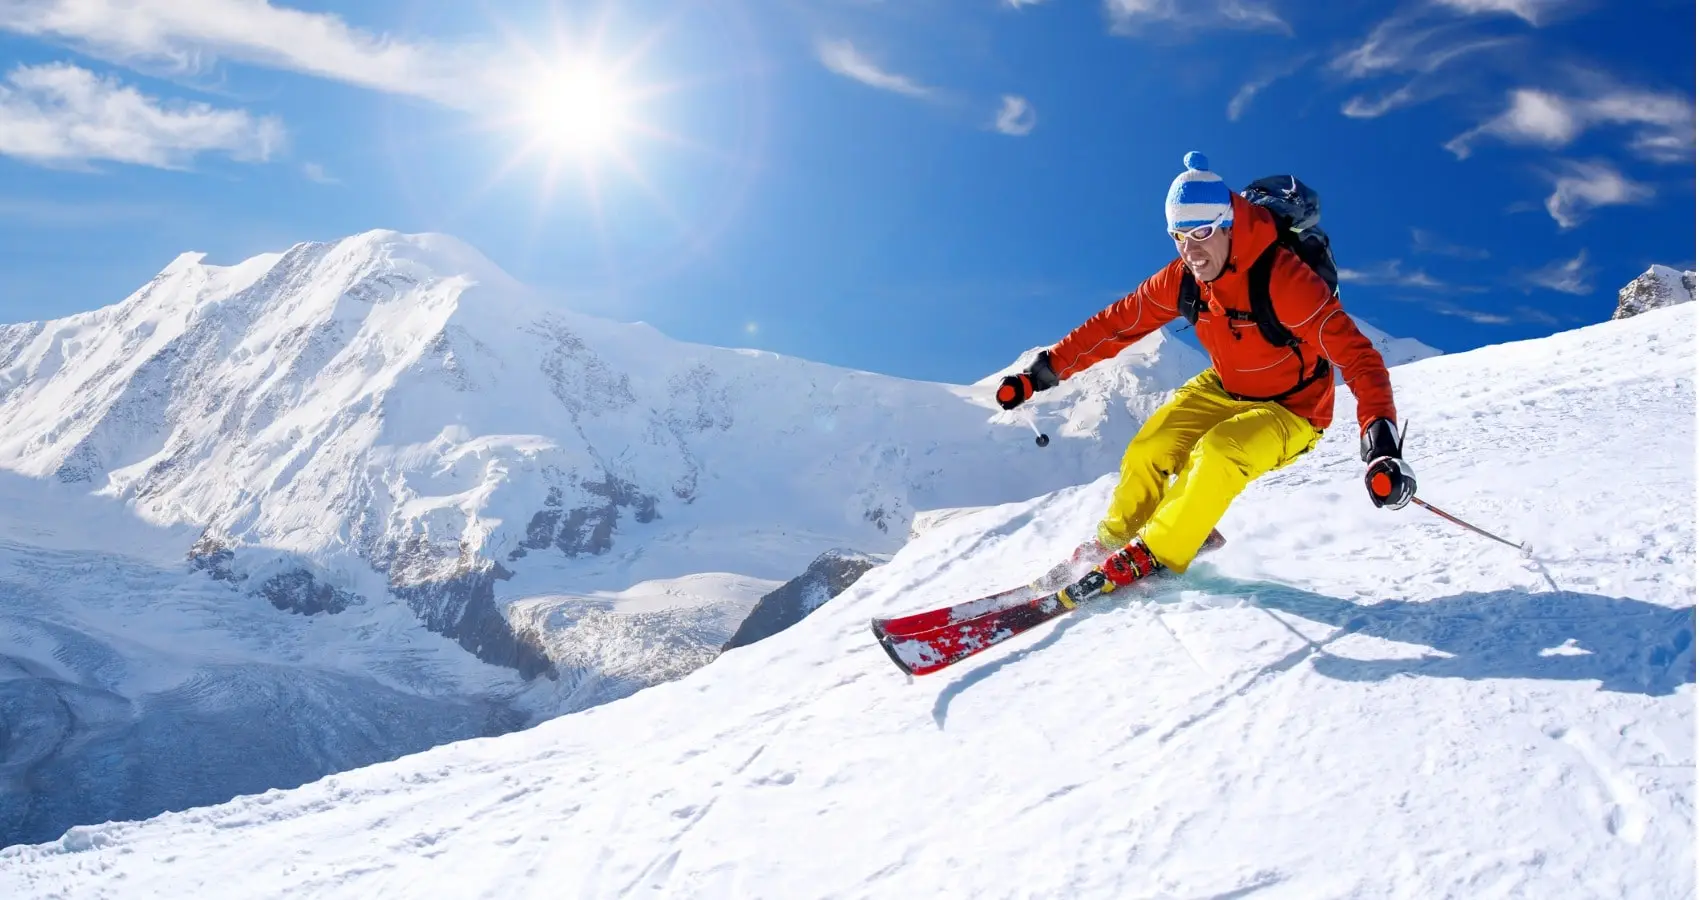 skier skiing down a mountain